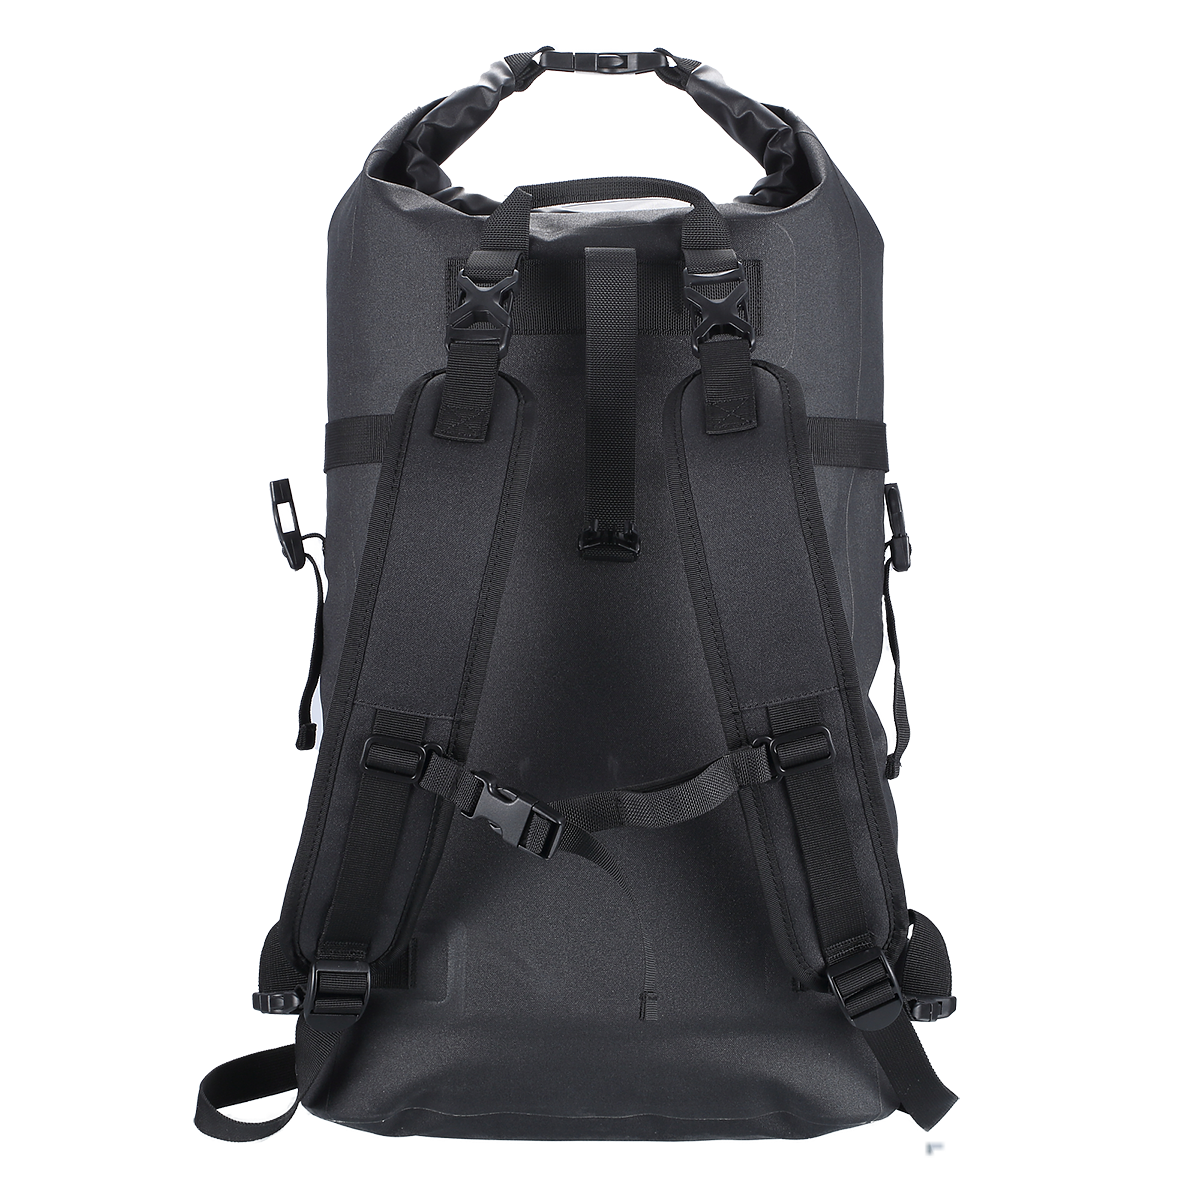 Nitecore WDB20 - waterproof backpack, 20L